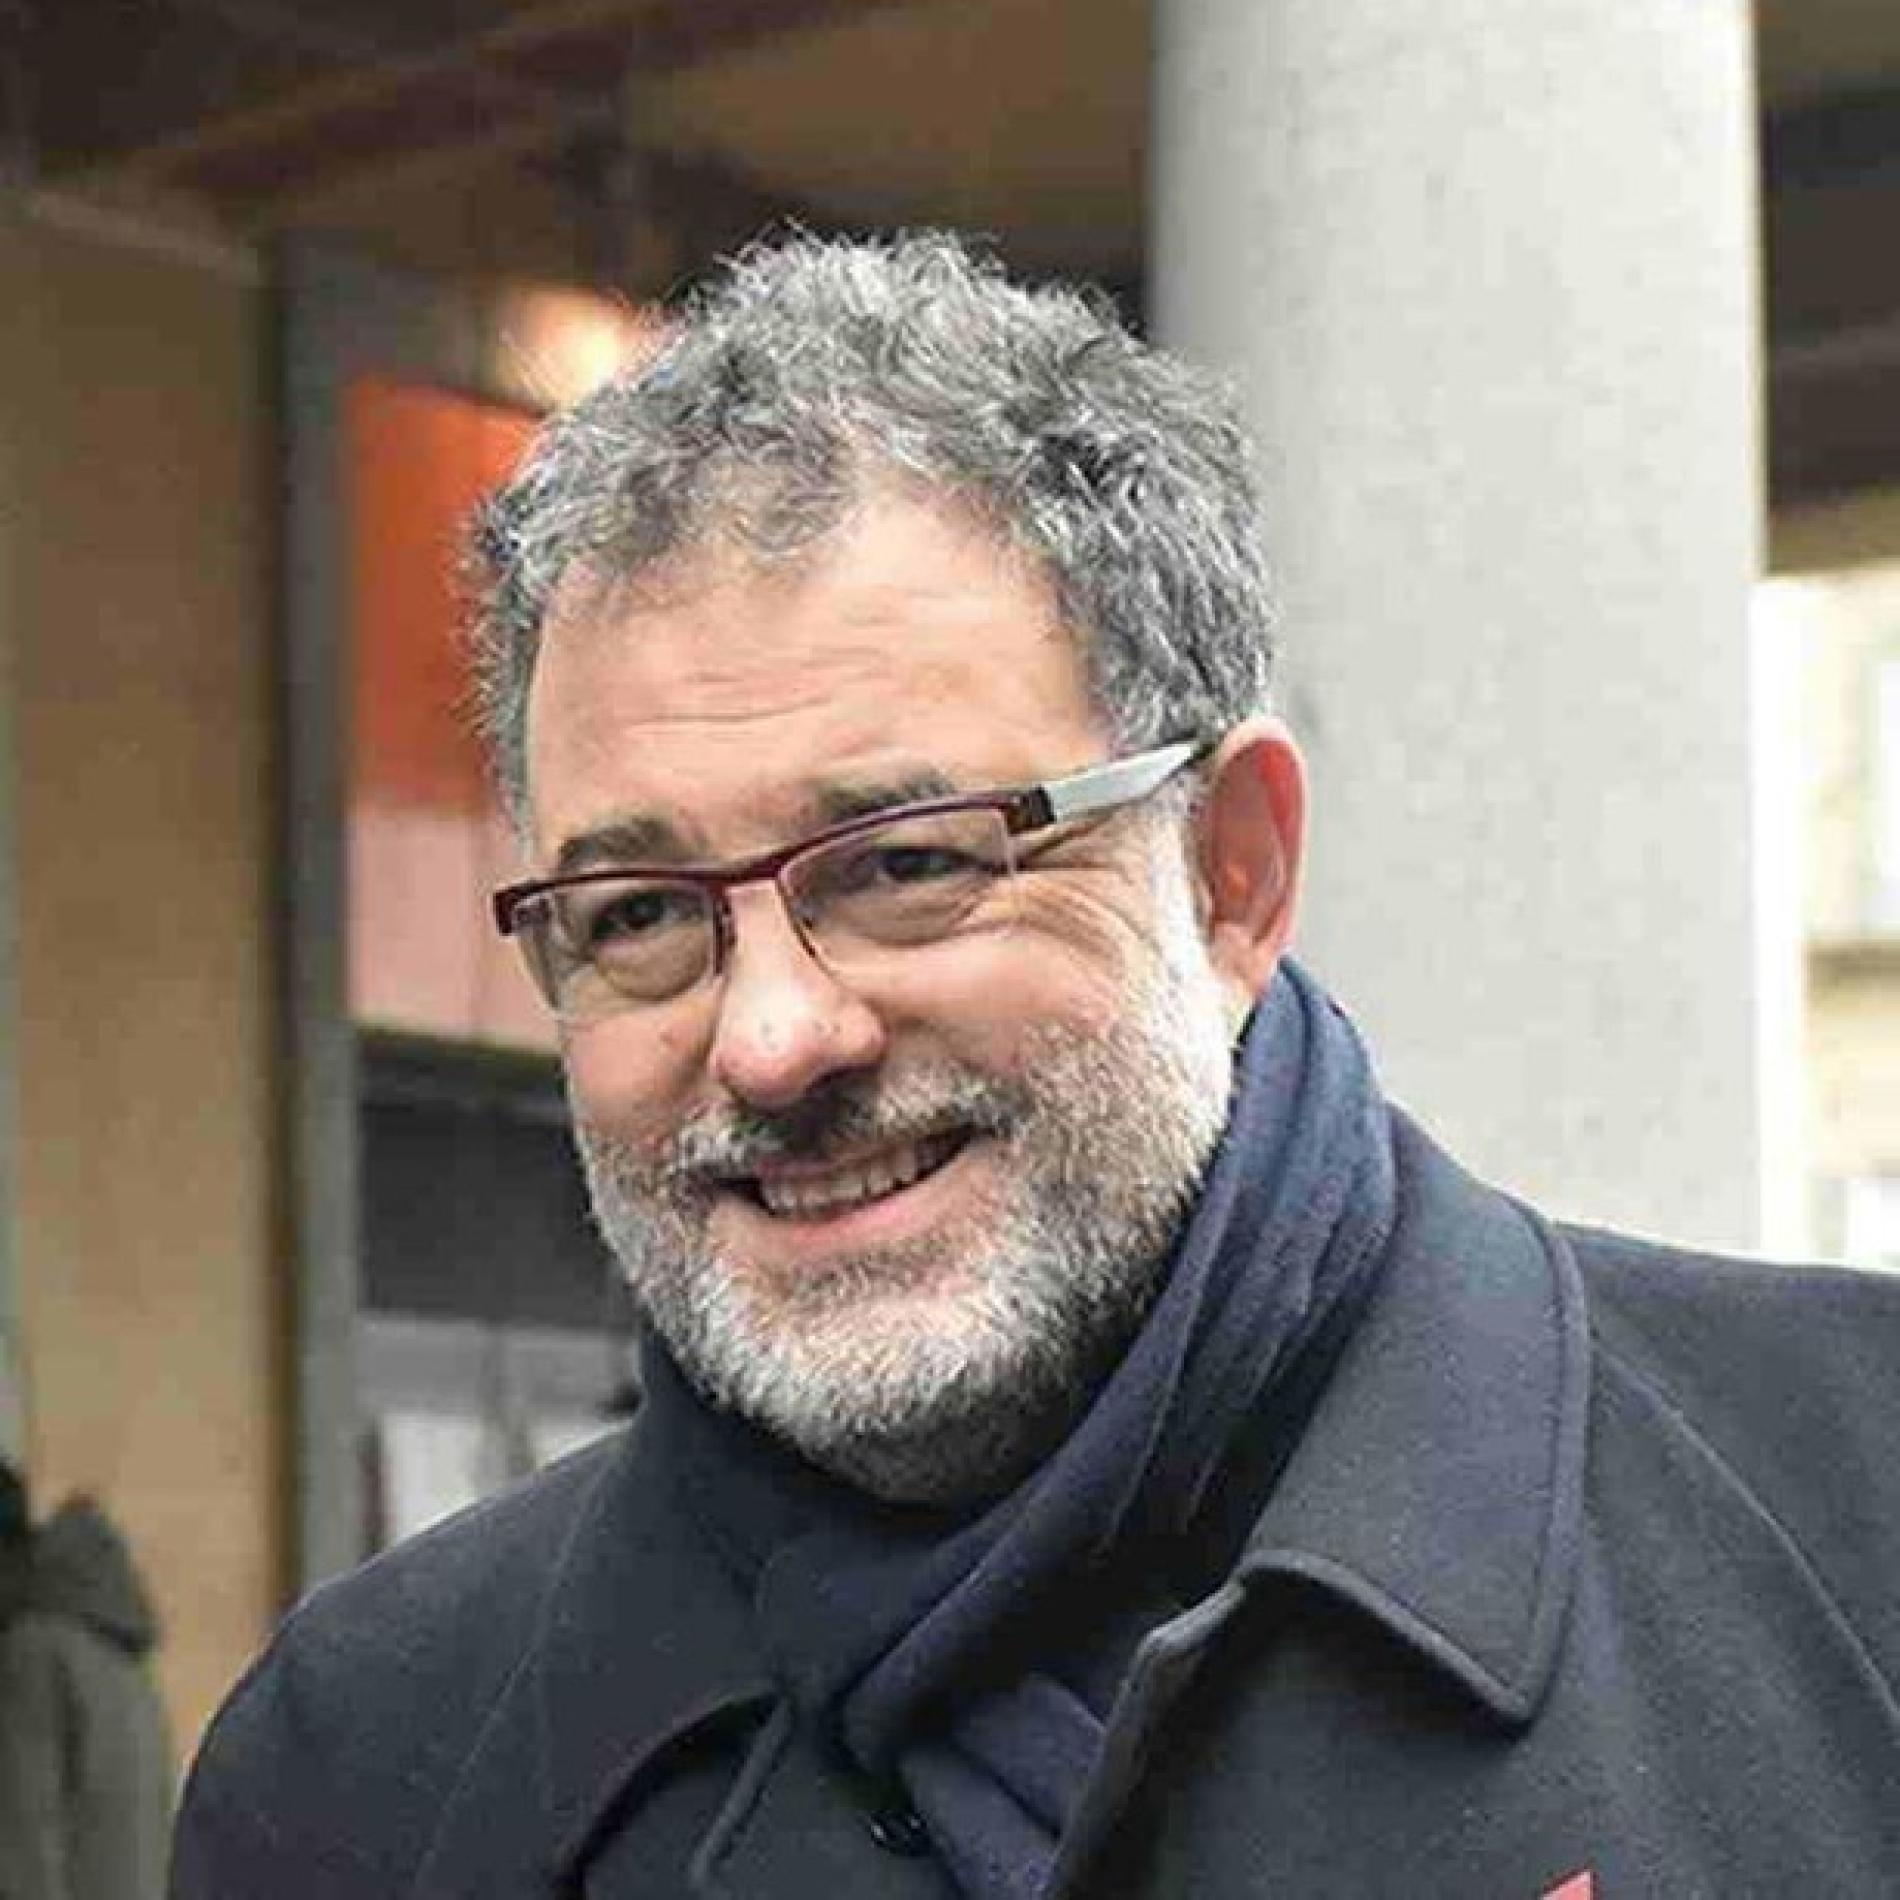 Peste suina: Giorgio Sapino commissario straordinario per l’emergenza